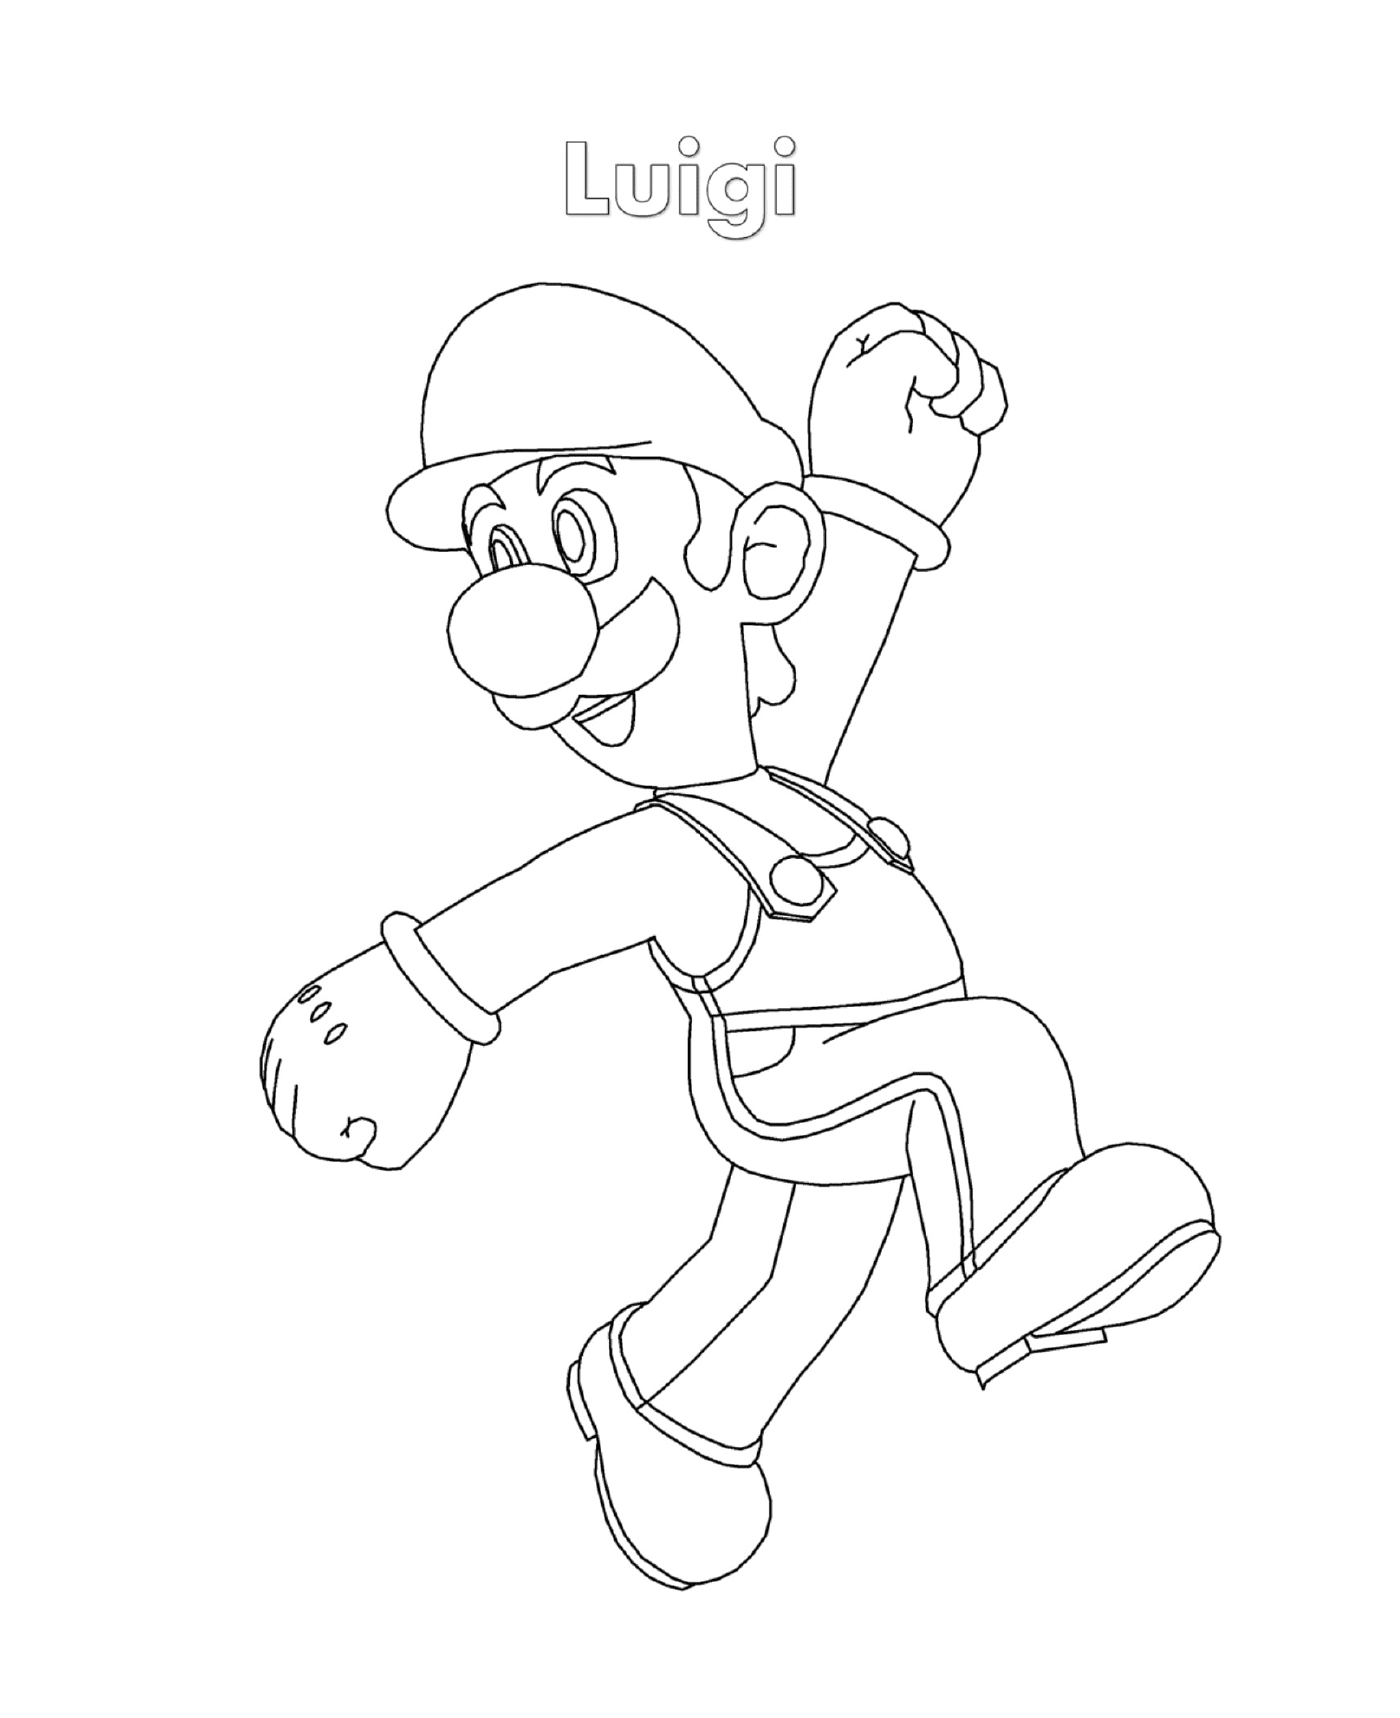  Luigi de Super Mario, um homem correndo 